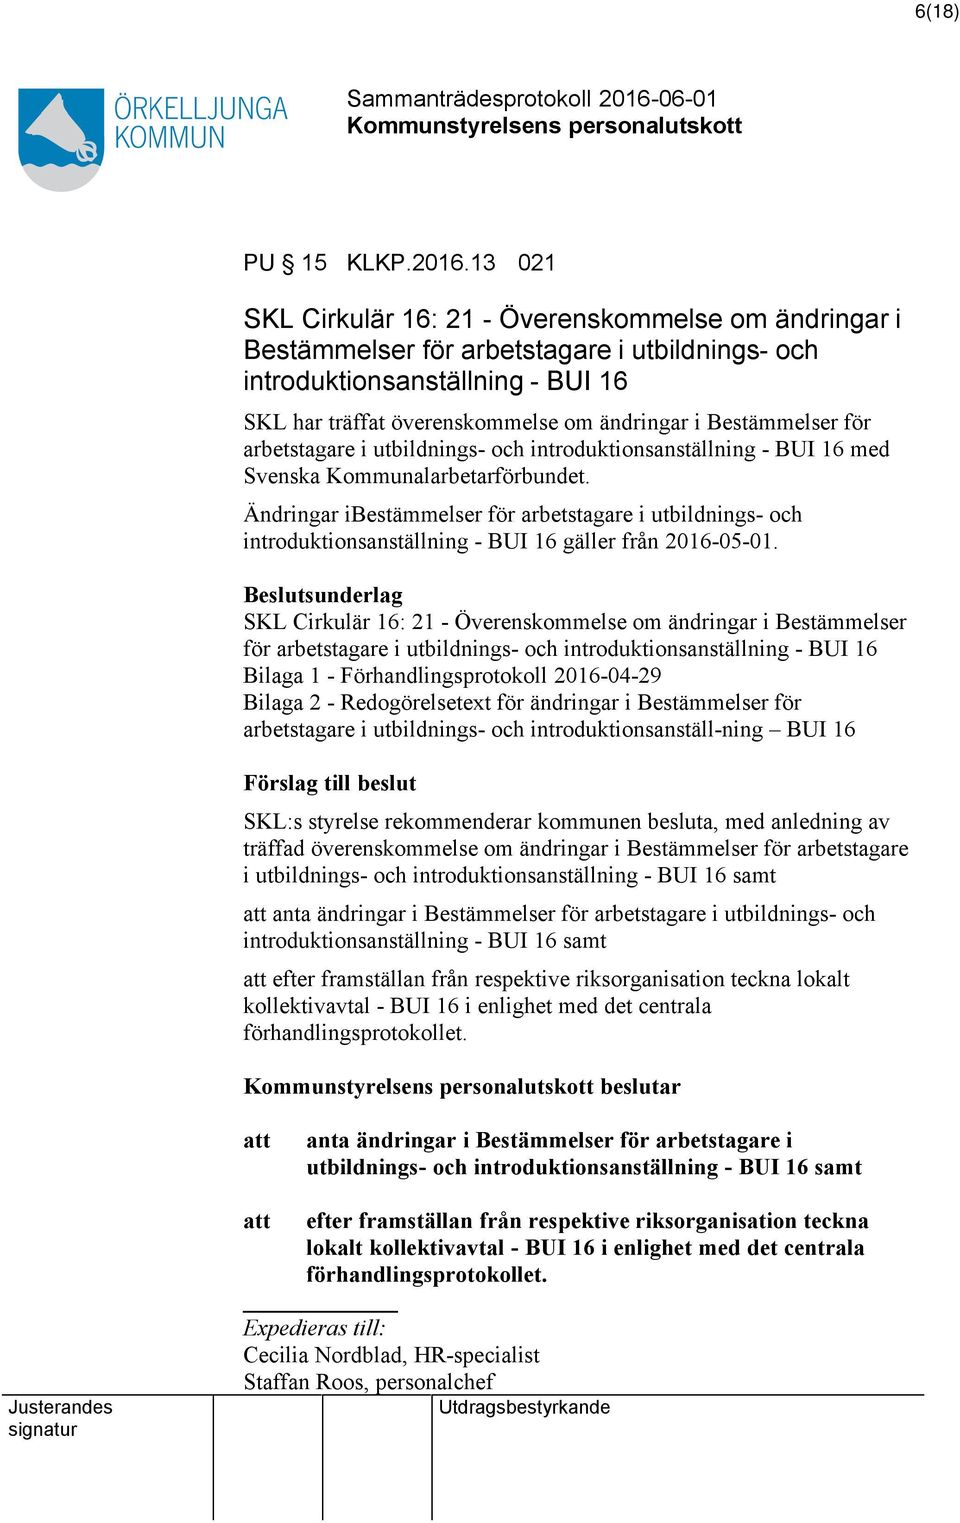 Bestämmelser för arbetstagare i utbildnings- och introduktionsanställning - BUI 16 med Svenska Kommunalarbetarförbundet.